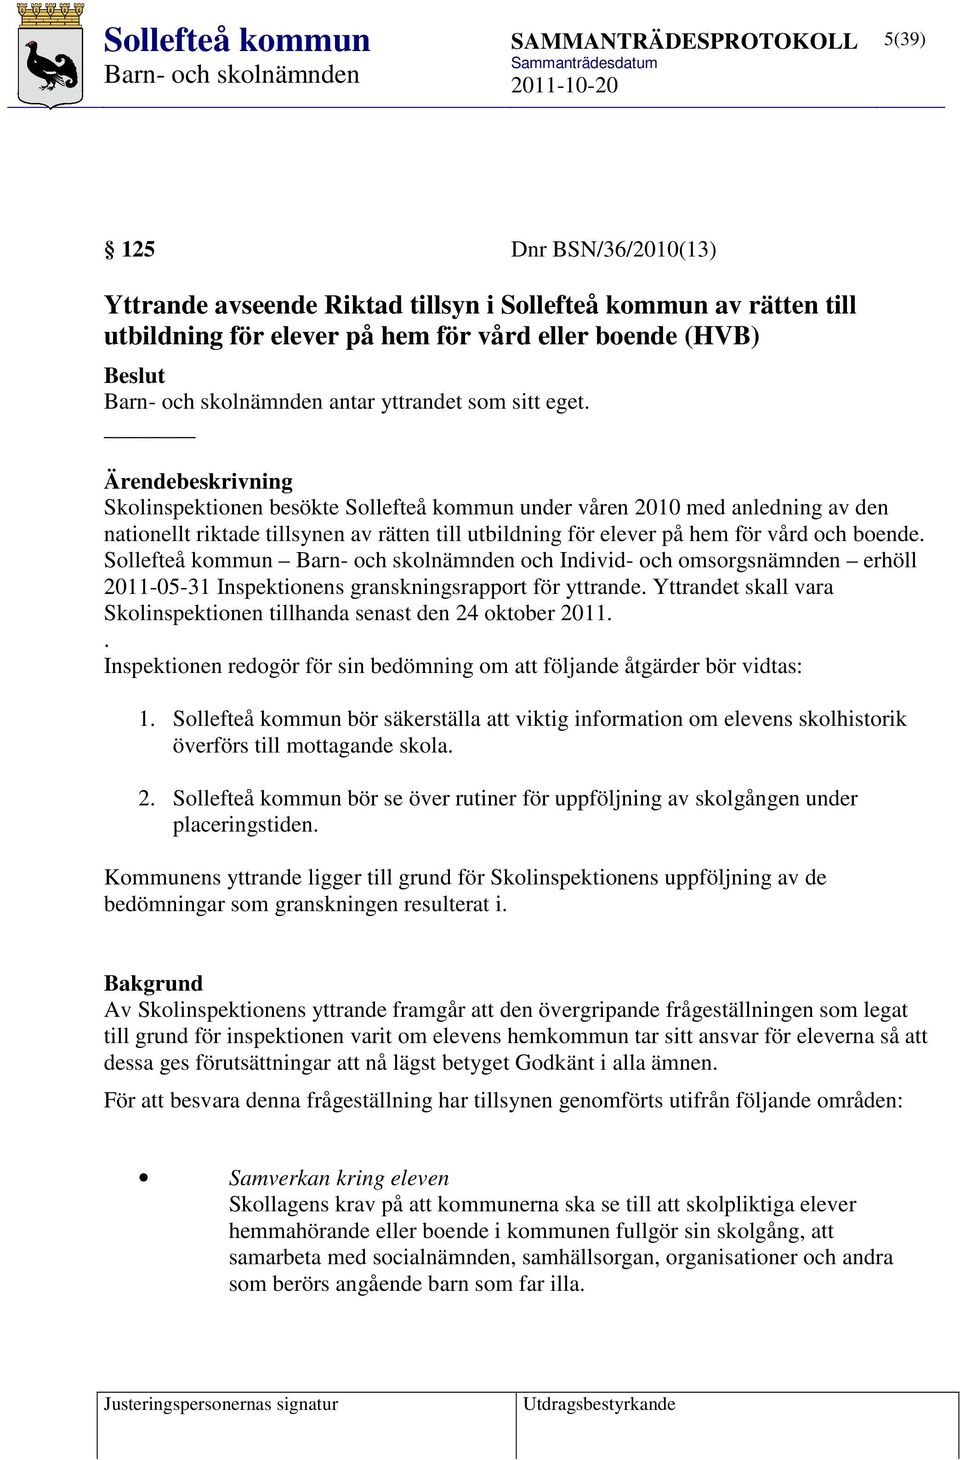 Sollefteå kommun och Individ- och omsorgsnämnden erhöll 2011-05-31 Inspektionens granskningsrapport för yttrande. Yttrandet skall vara Skolinspektionen tillhanda senast den 24 oktober 2011.